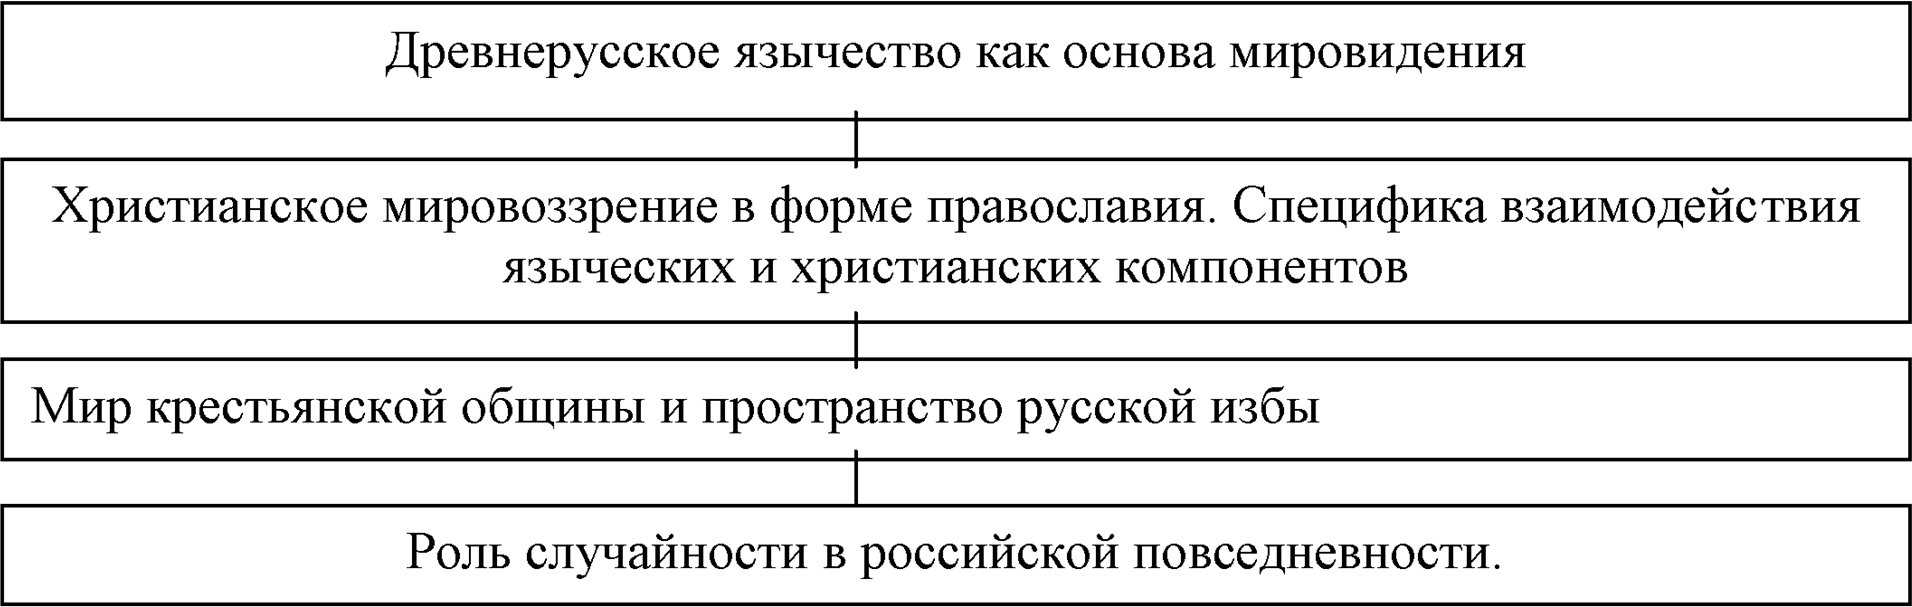 Особенности культуры повседневности Древней и Средневековой Руси